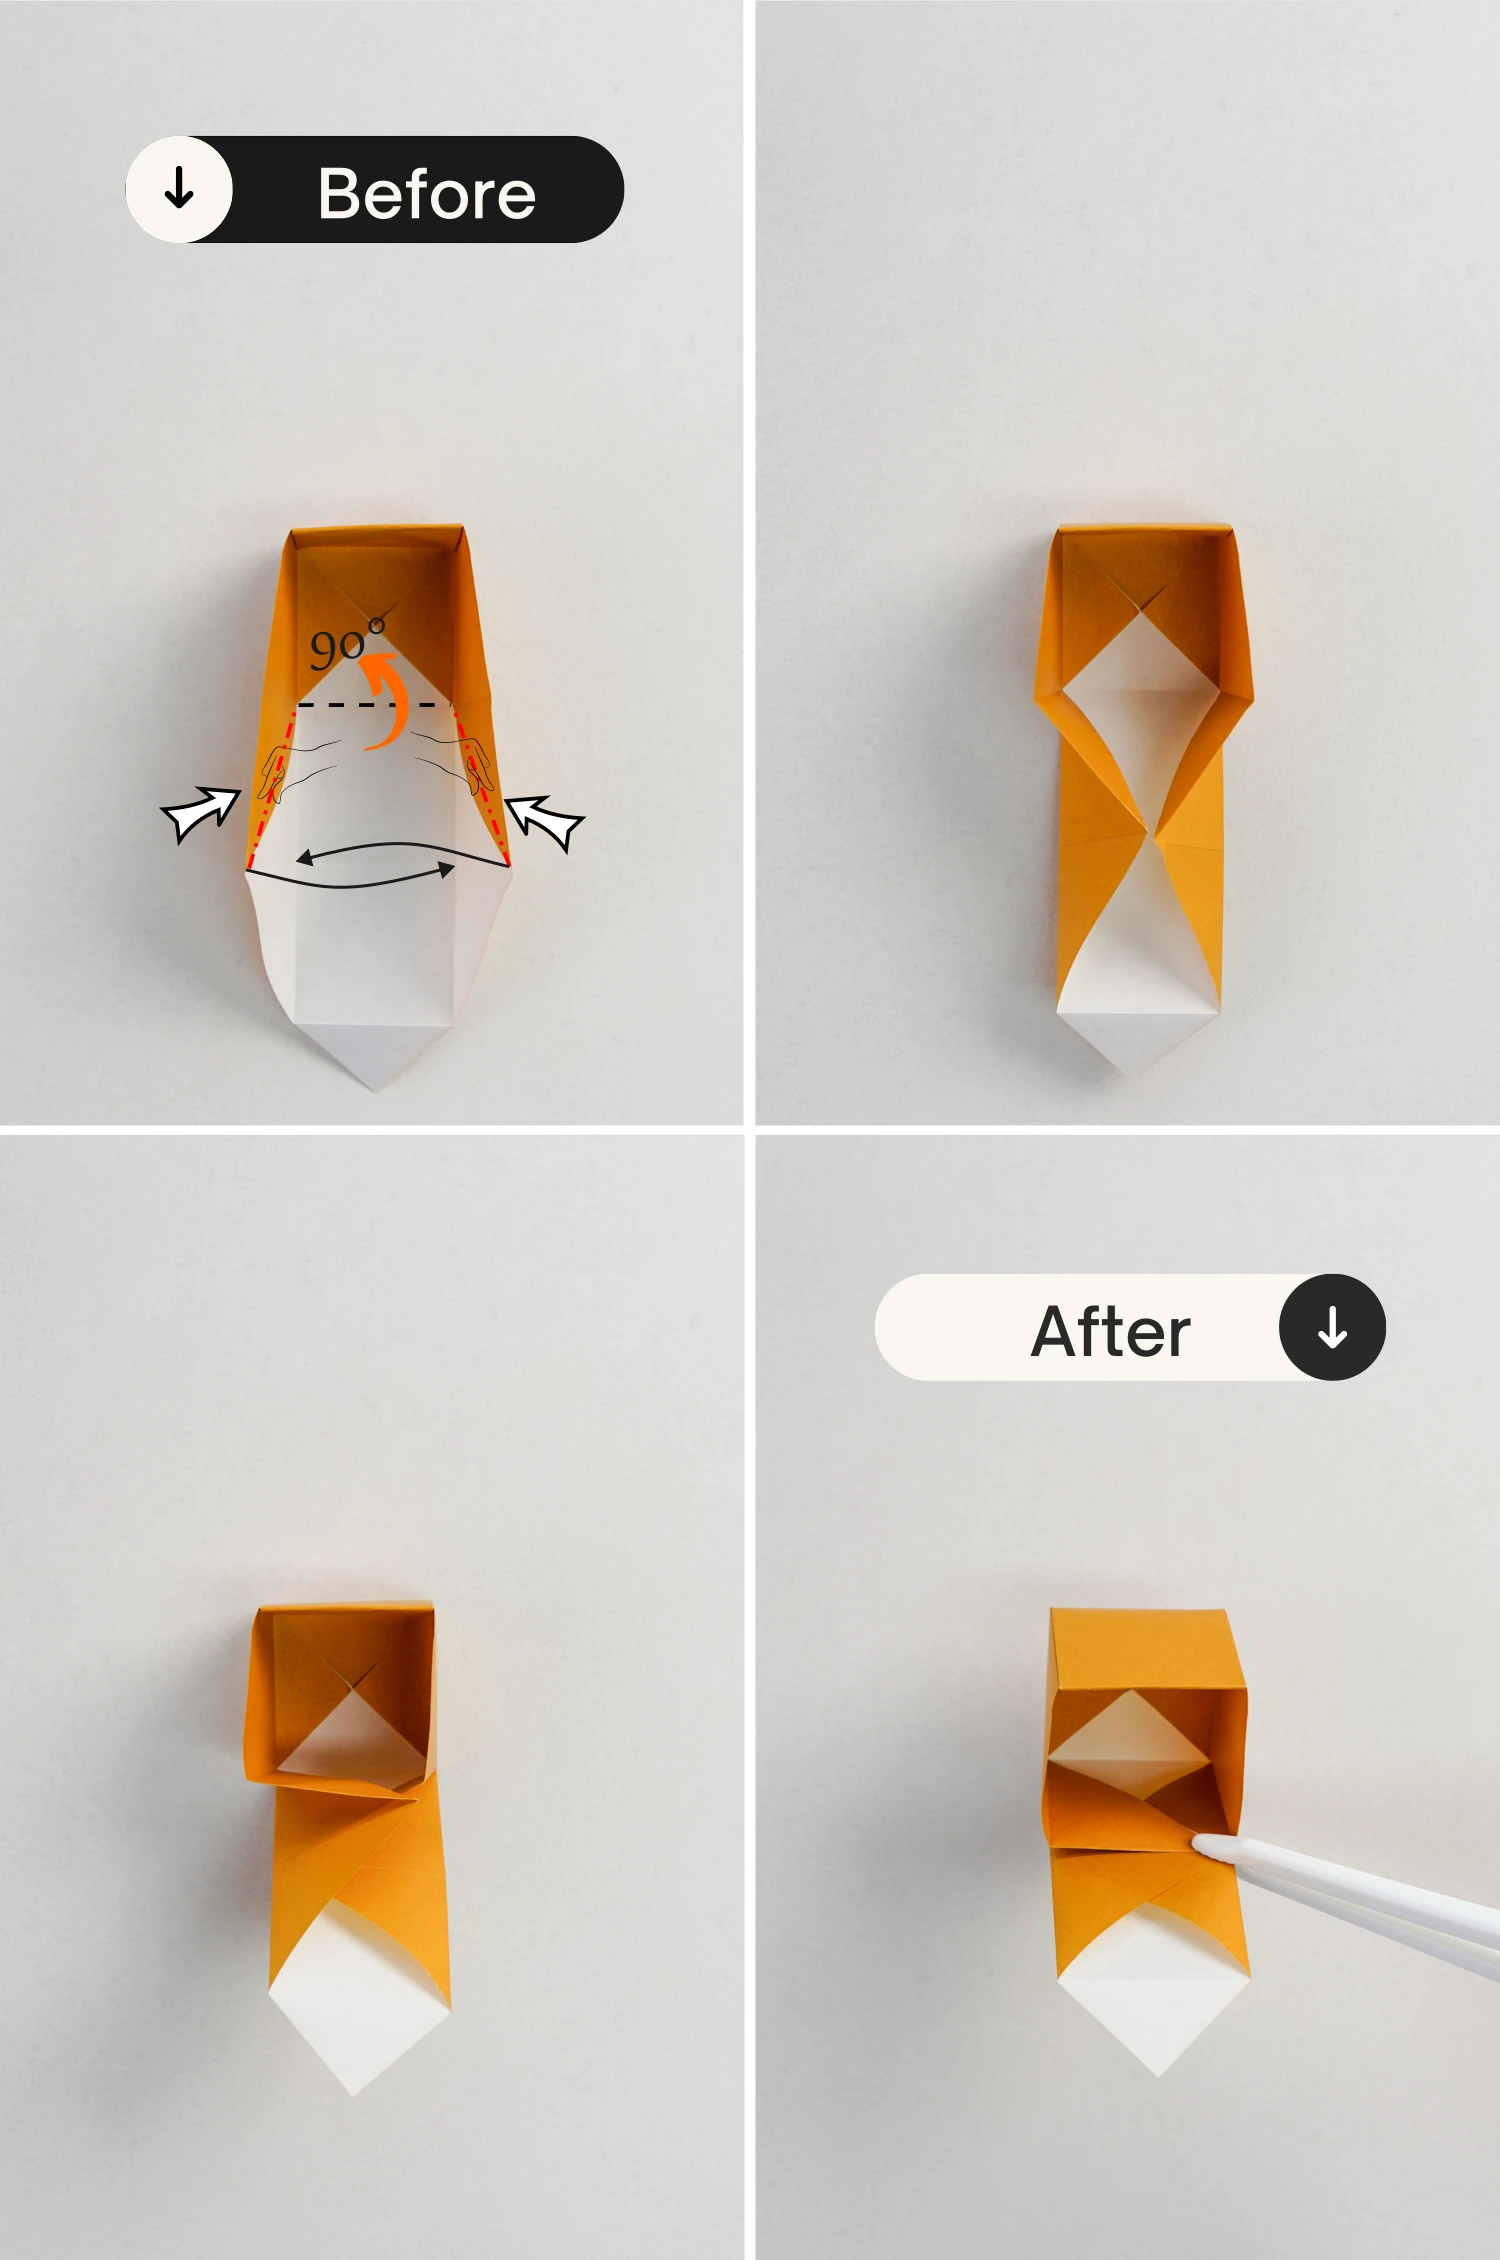 origami gift box | origamiok.com